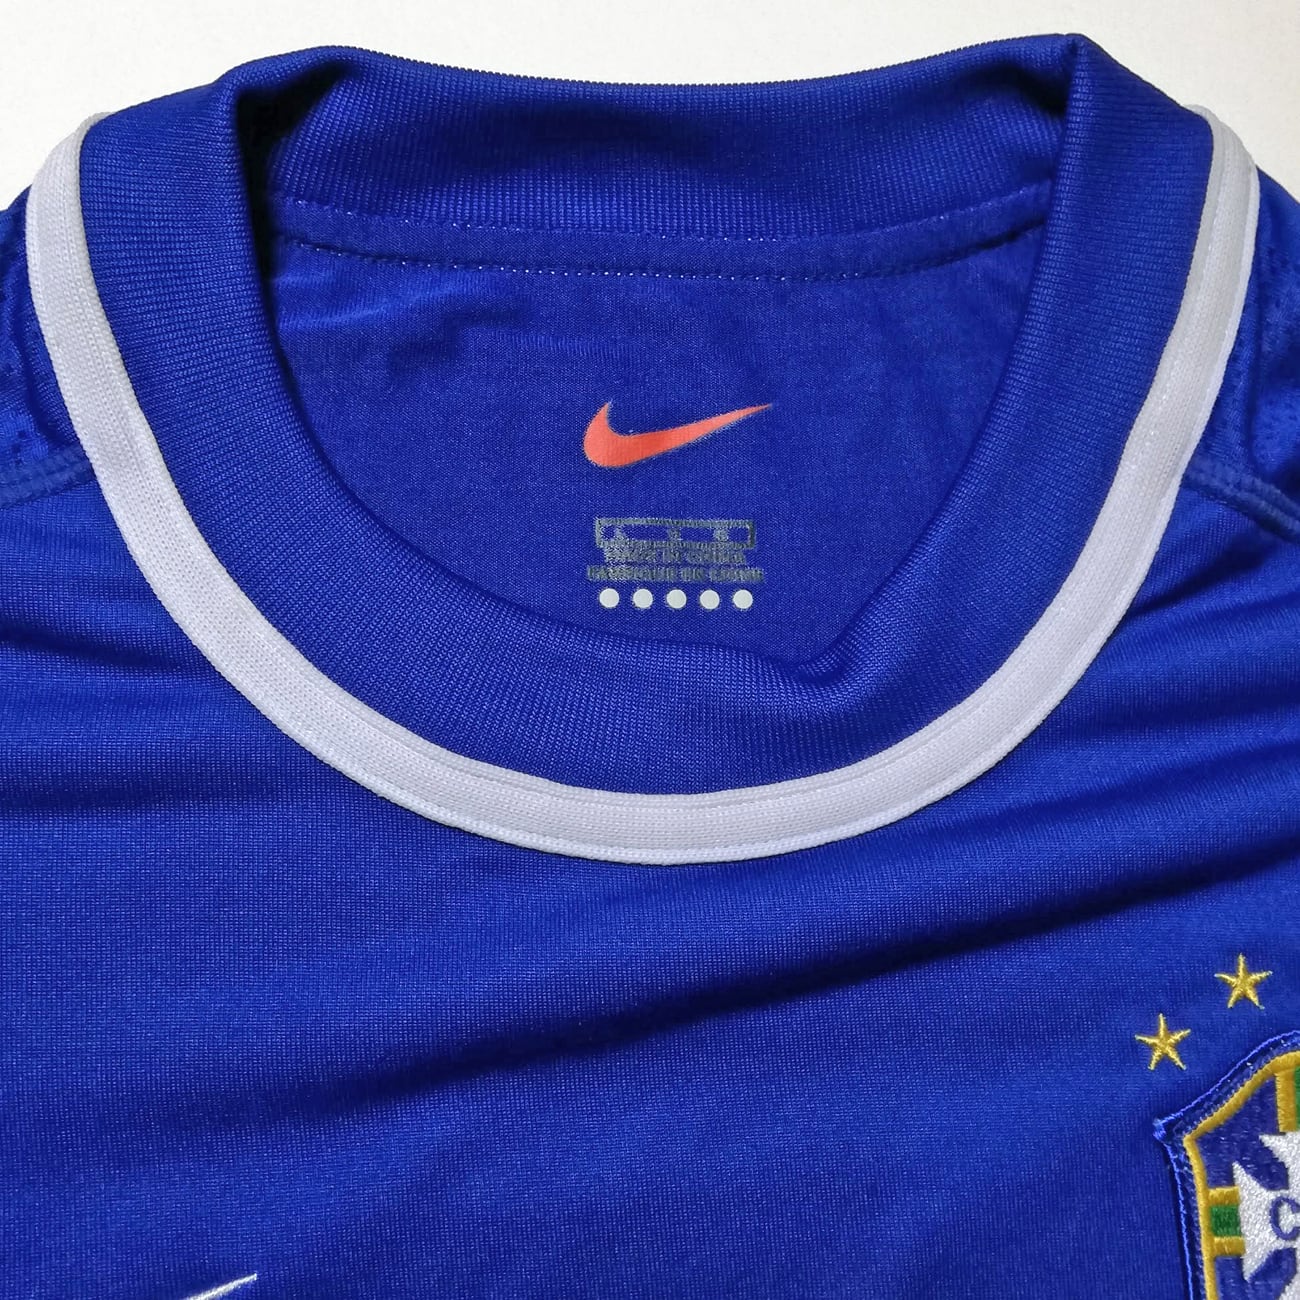 ナイキNIKE国内品ブラジル代表2002年ユニフォーム(サッカーシャツ)青M 